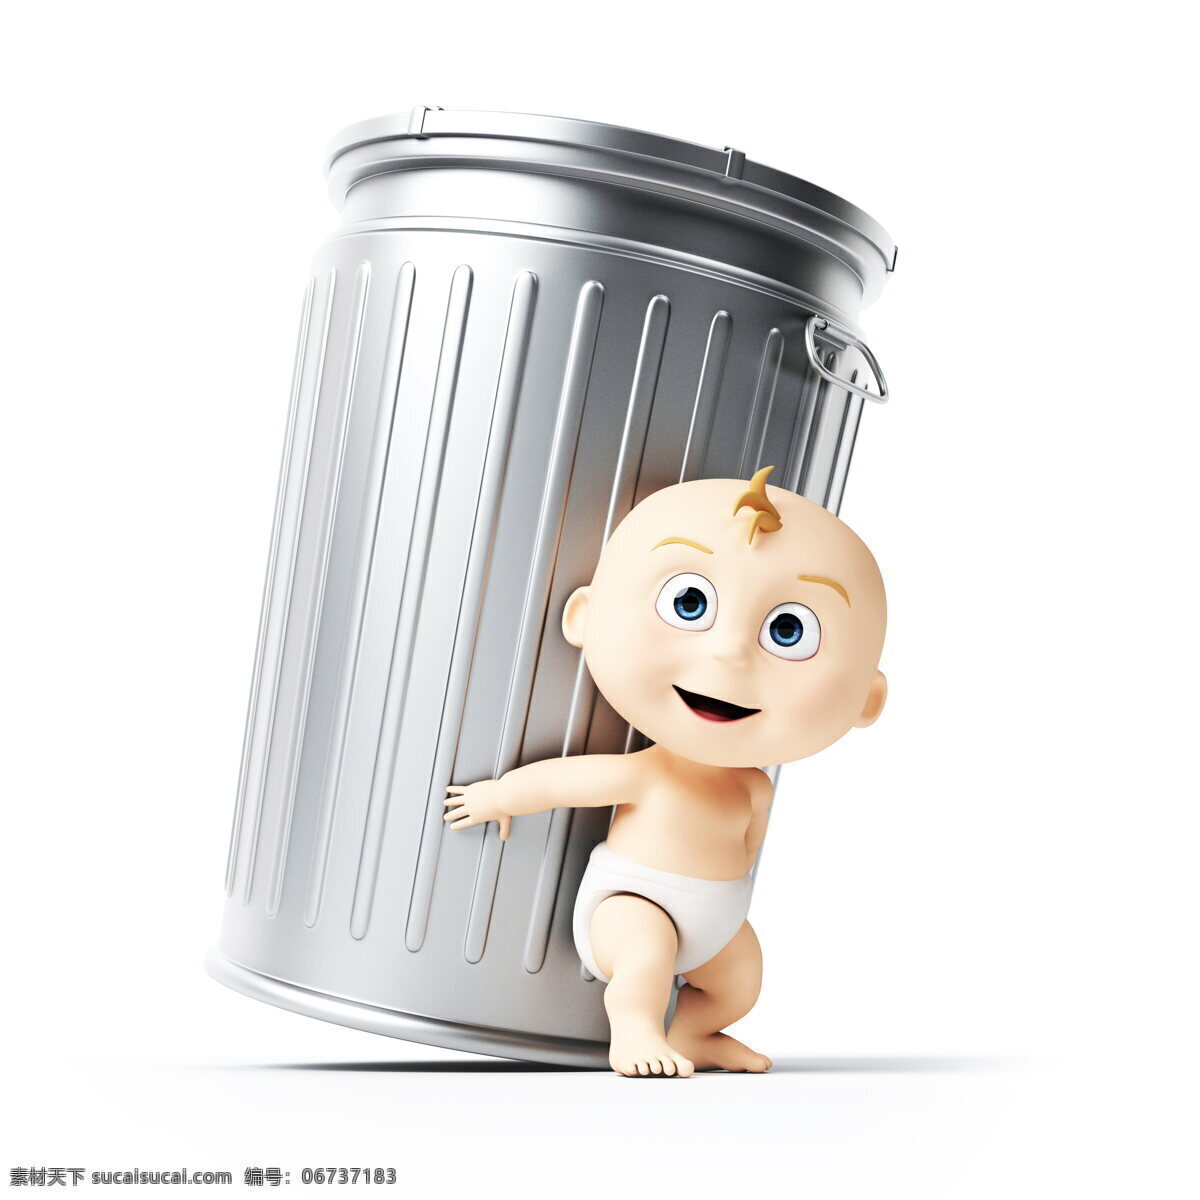 宝宝 垃圾桶 创意 高清 3d宝宝 铁桶 桶 铁制品